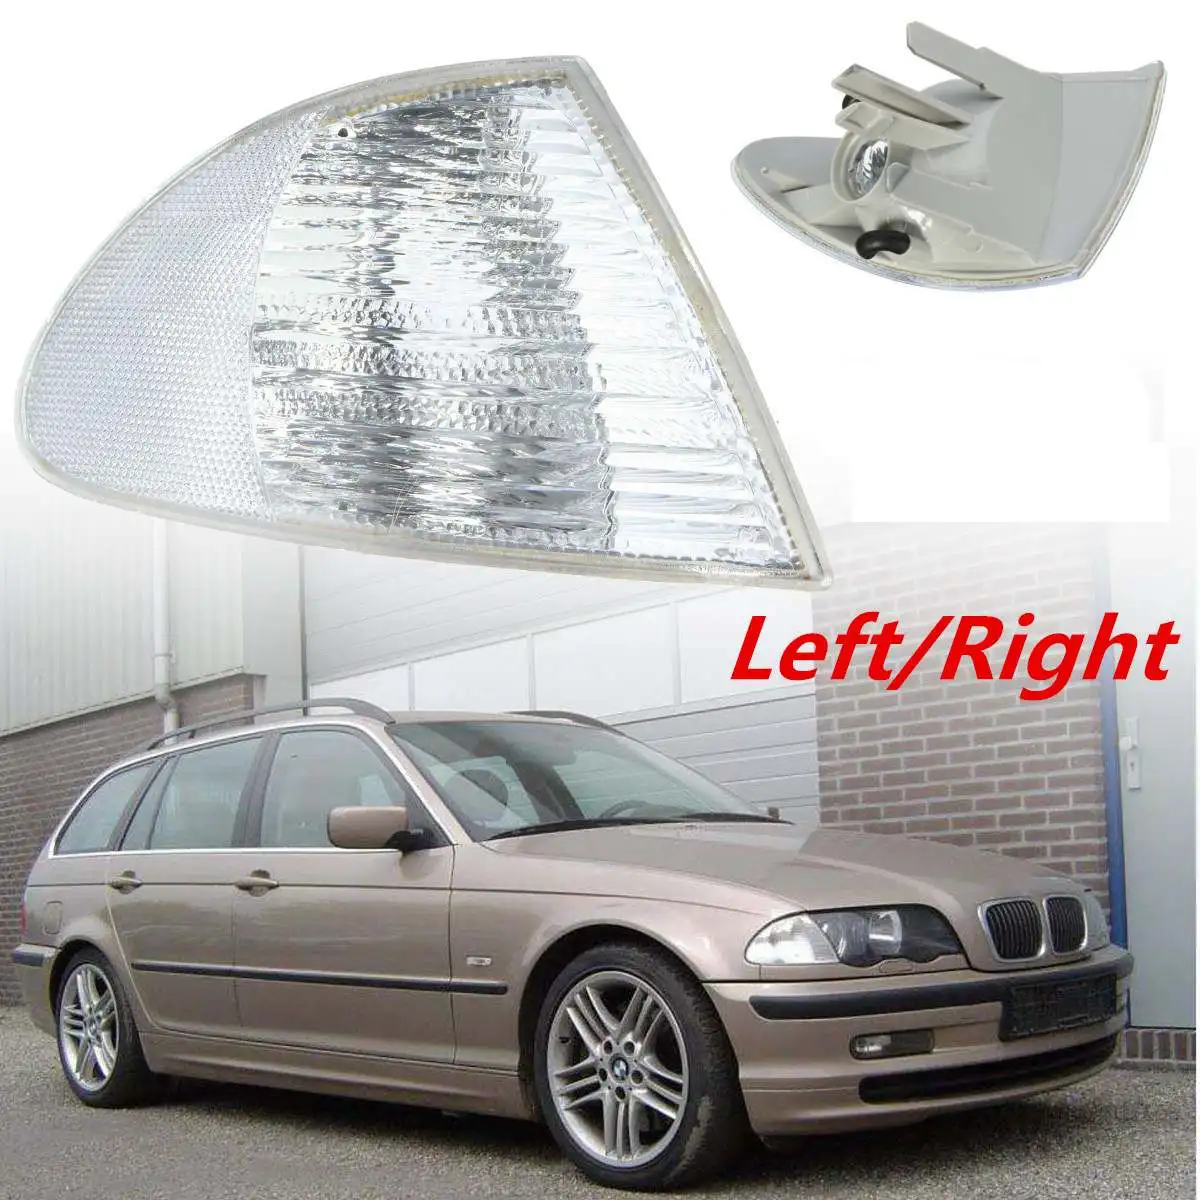 LH/RH автомобильные Габаритные и поворотные сигнальные Угловые Световые индикаторы Боковой габаритный фонарь крышка объектива для BMW E46 3 серии 1999-2001 без ламп